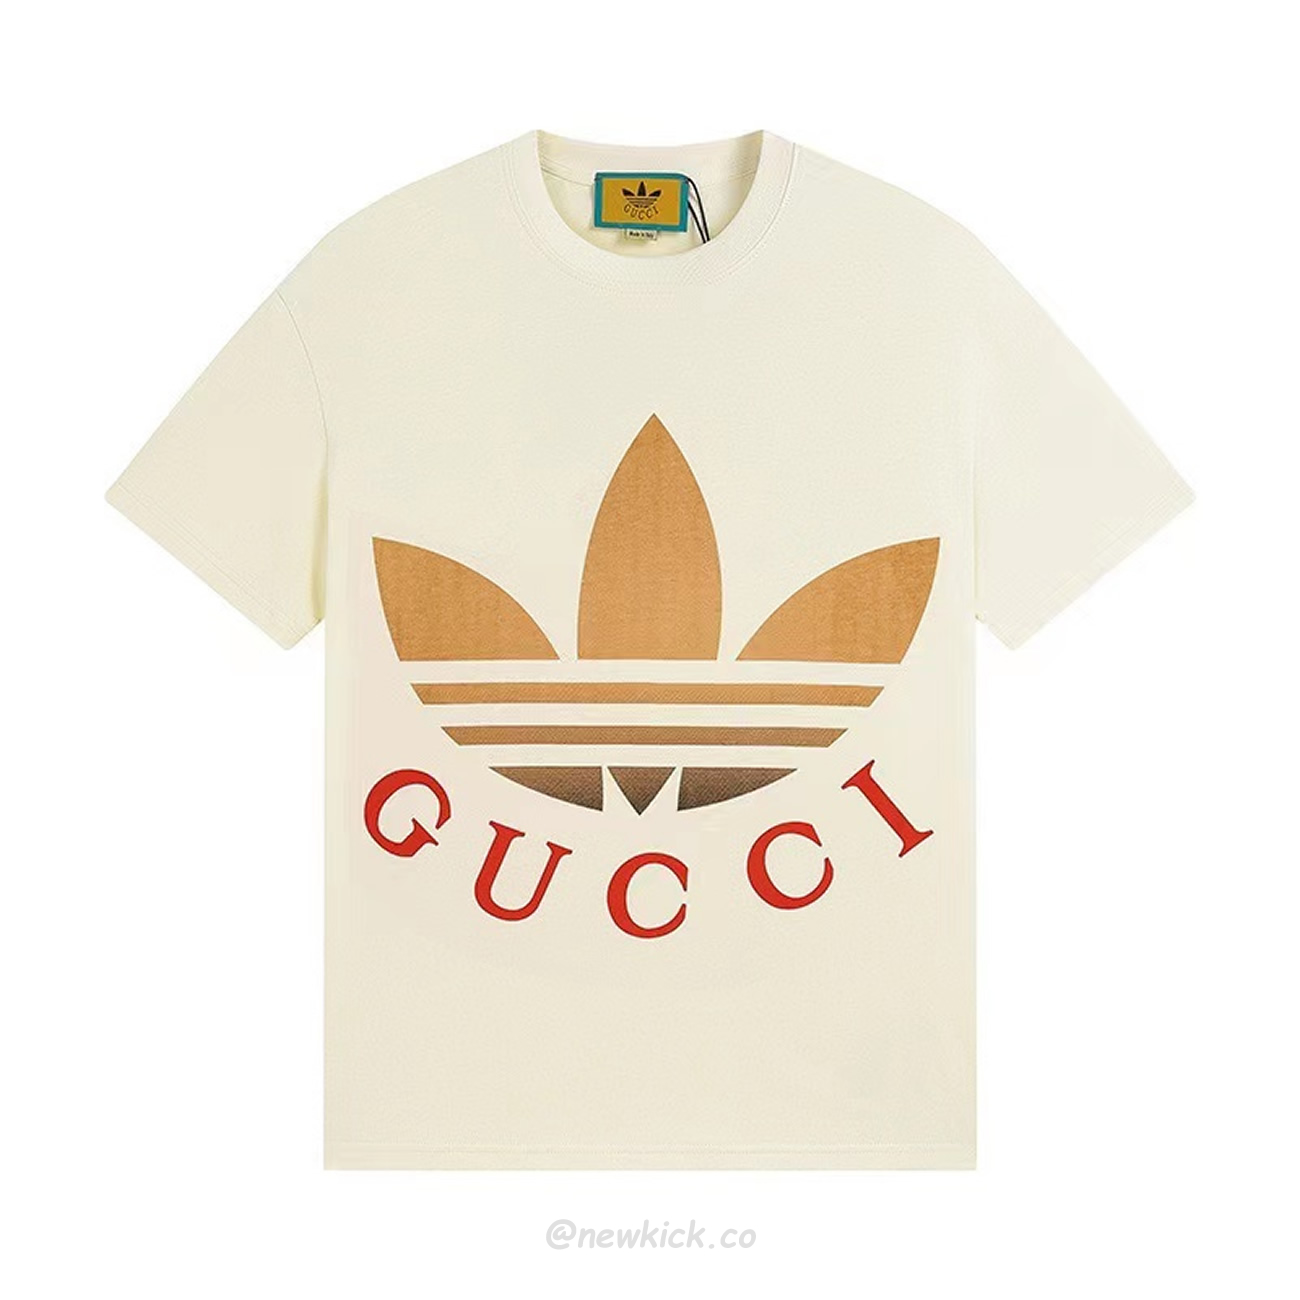 Gucci X Adidas Cotton Jersey T Shirt (1) - newkick.org